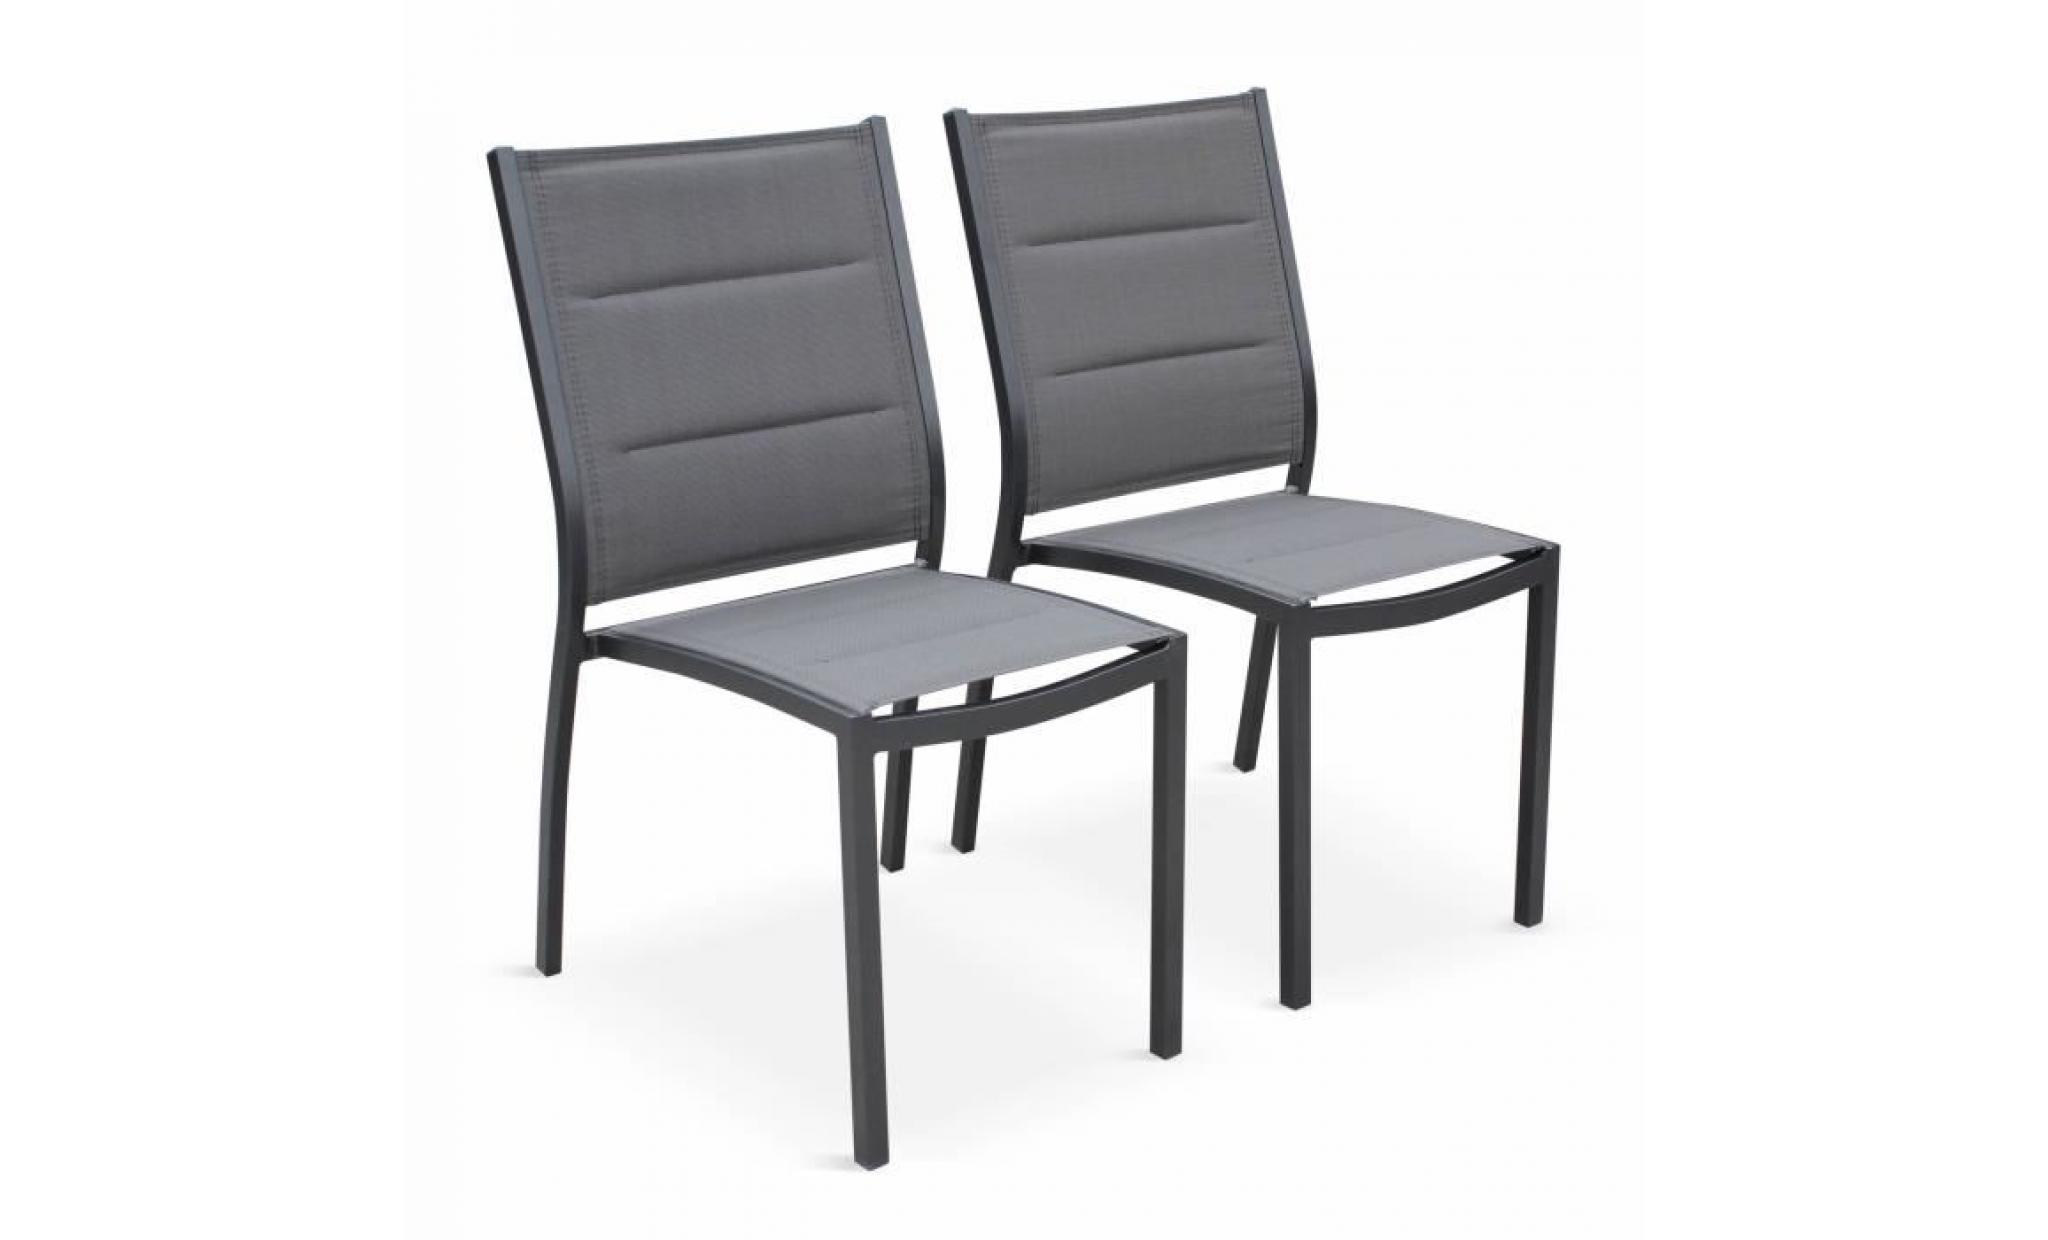 lot de 2 chaises   chicago / odenton anthracite   en aluminium anthracite et textilène gris foncé, empilables